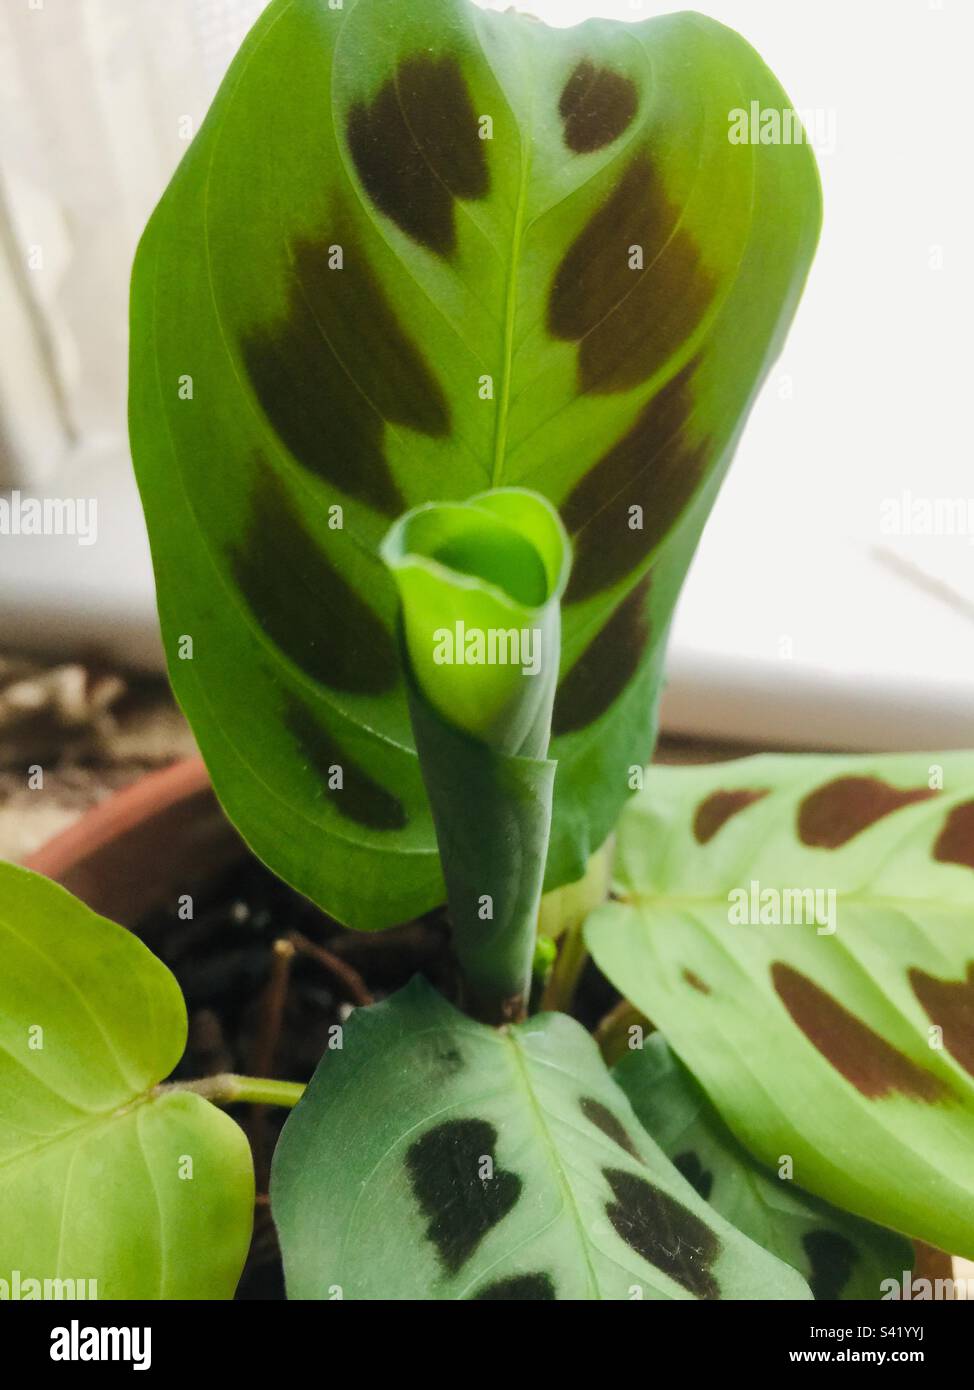 Ich Werde Entfalten. Ein frisches Blatt auf einer Gebetspflanze, Maranta leuconeura, kurz davor, sich zu entspannen. Konzepte: Frische, Neuheit, Nächstes, Natur. Wächst in Innenräumen. Kanada Stockfoto